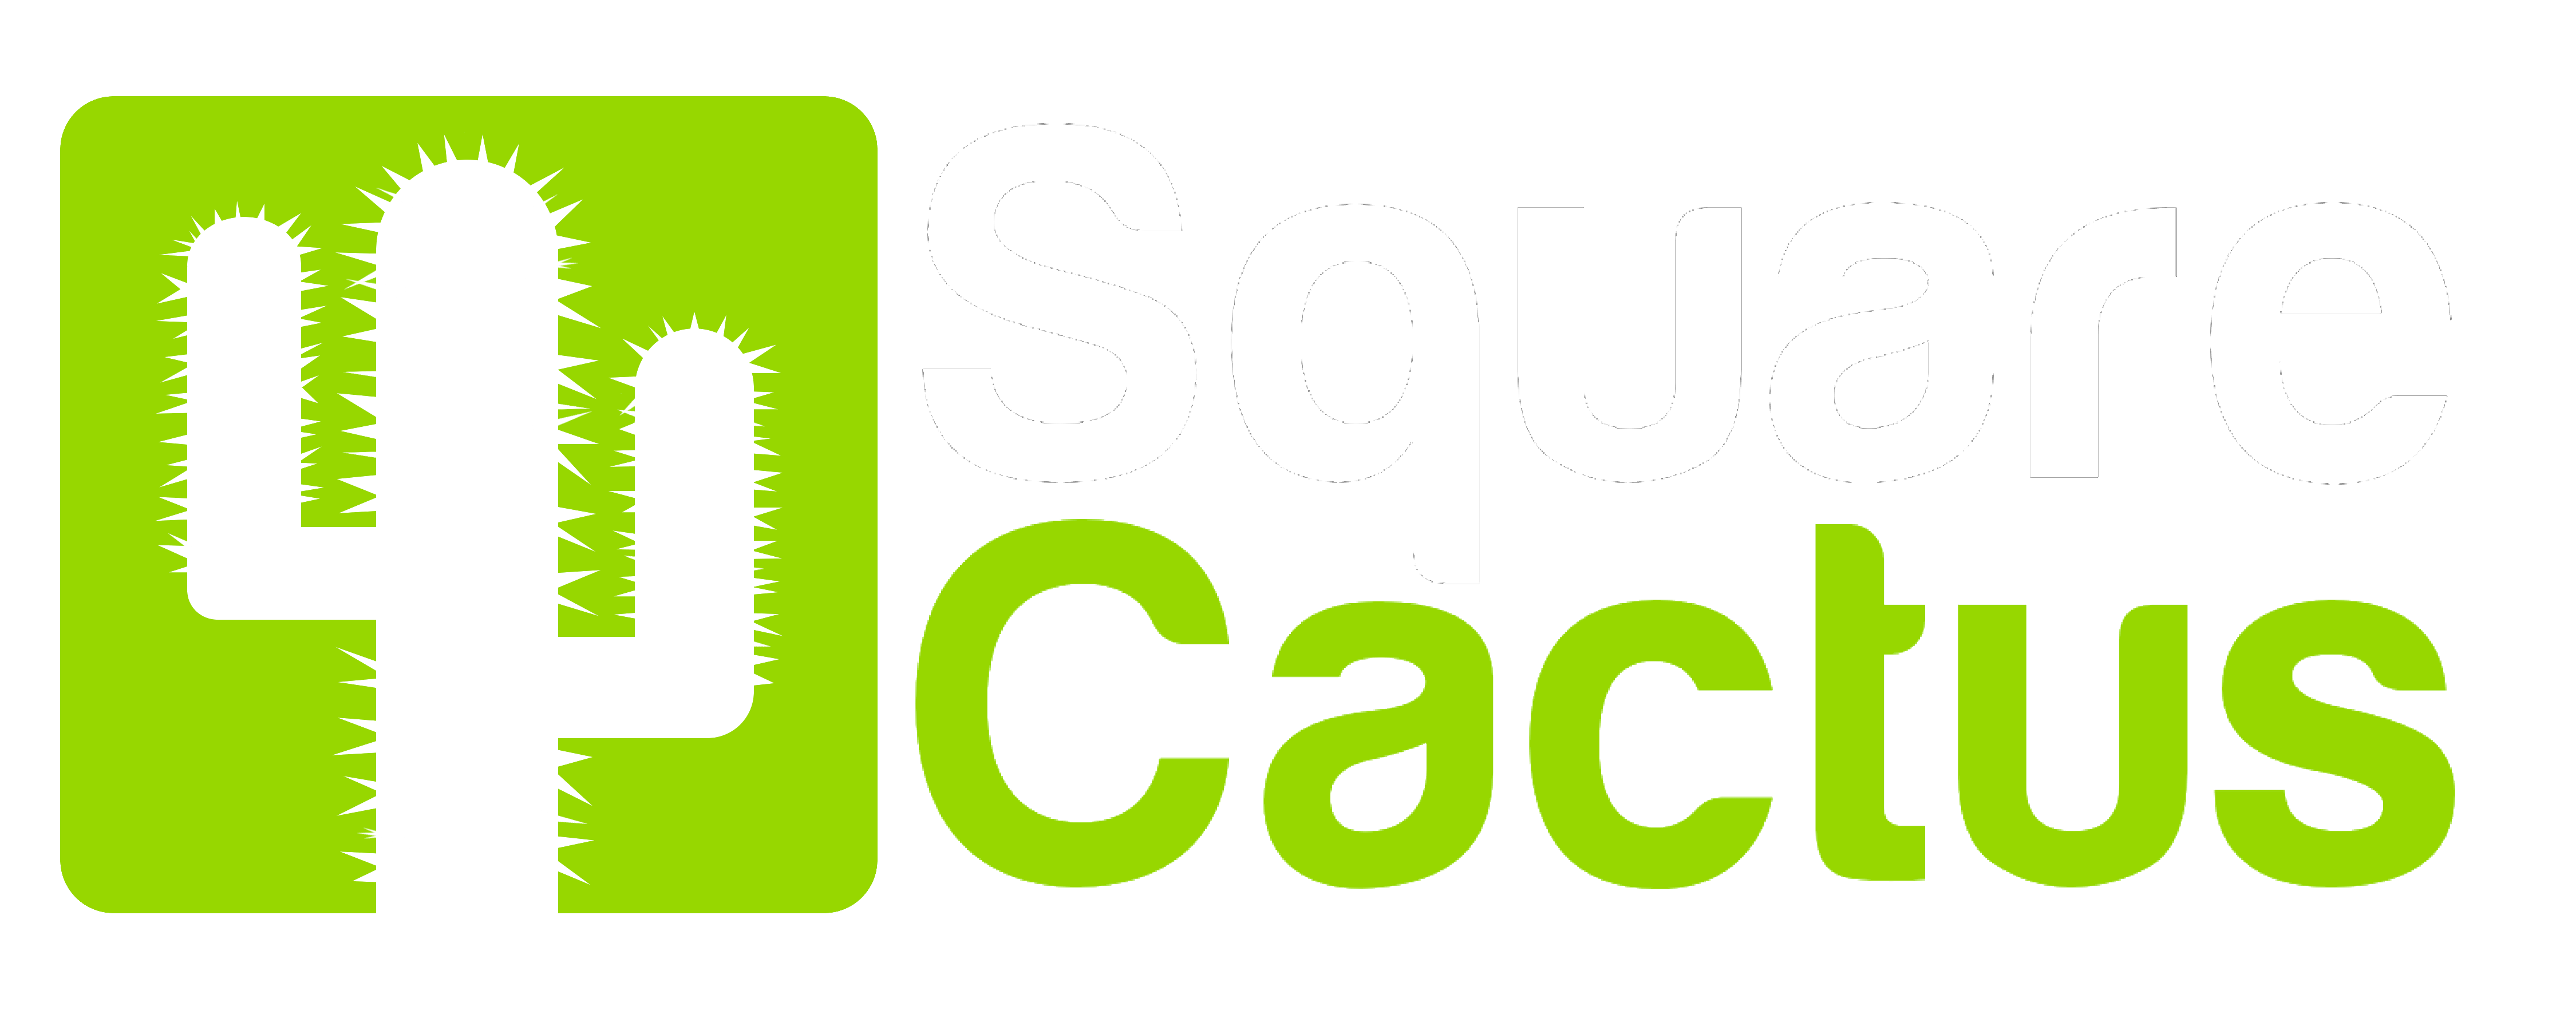 Social Media Green Logo - Square Cactus, Social Media, Training & PR